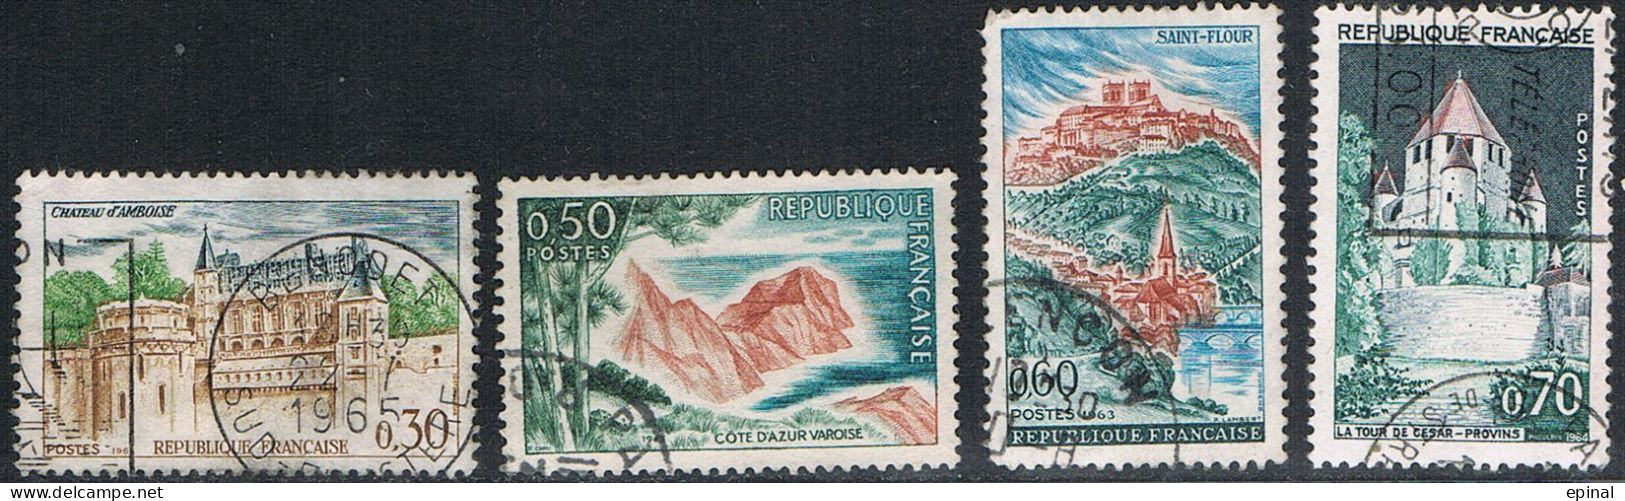 FRANCE : N° 1390 -1391-1392-392A Oblitérés (Série Touristique) - PRIX FIXE - - Used Stamps